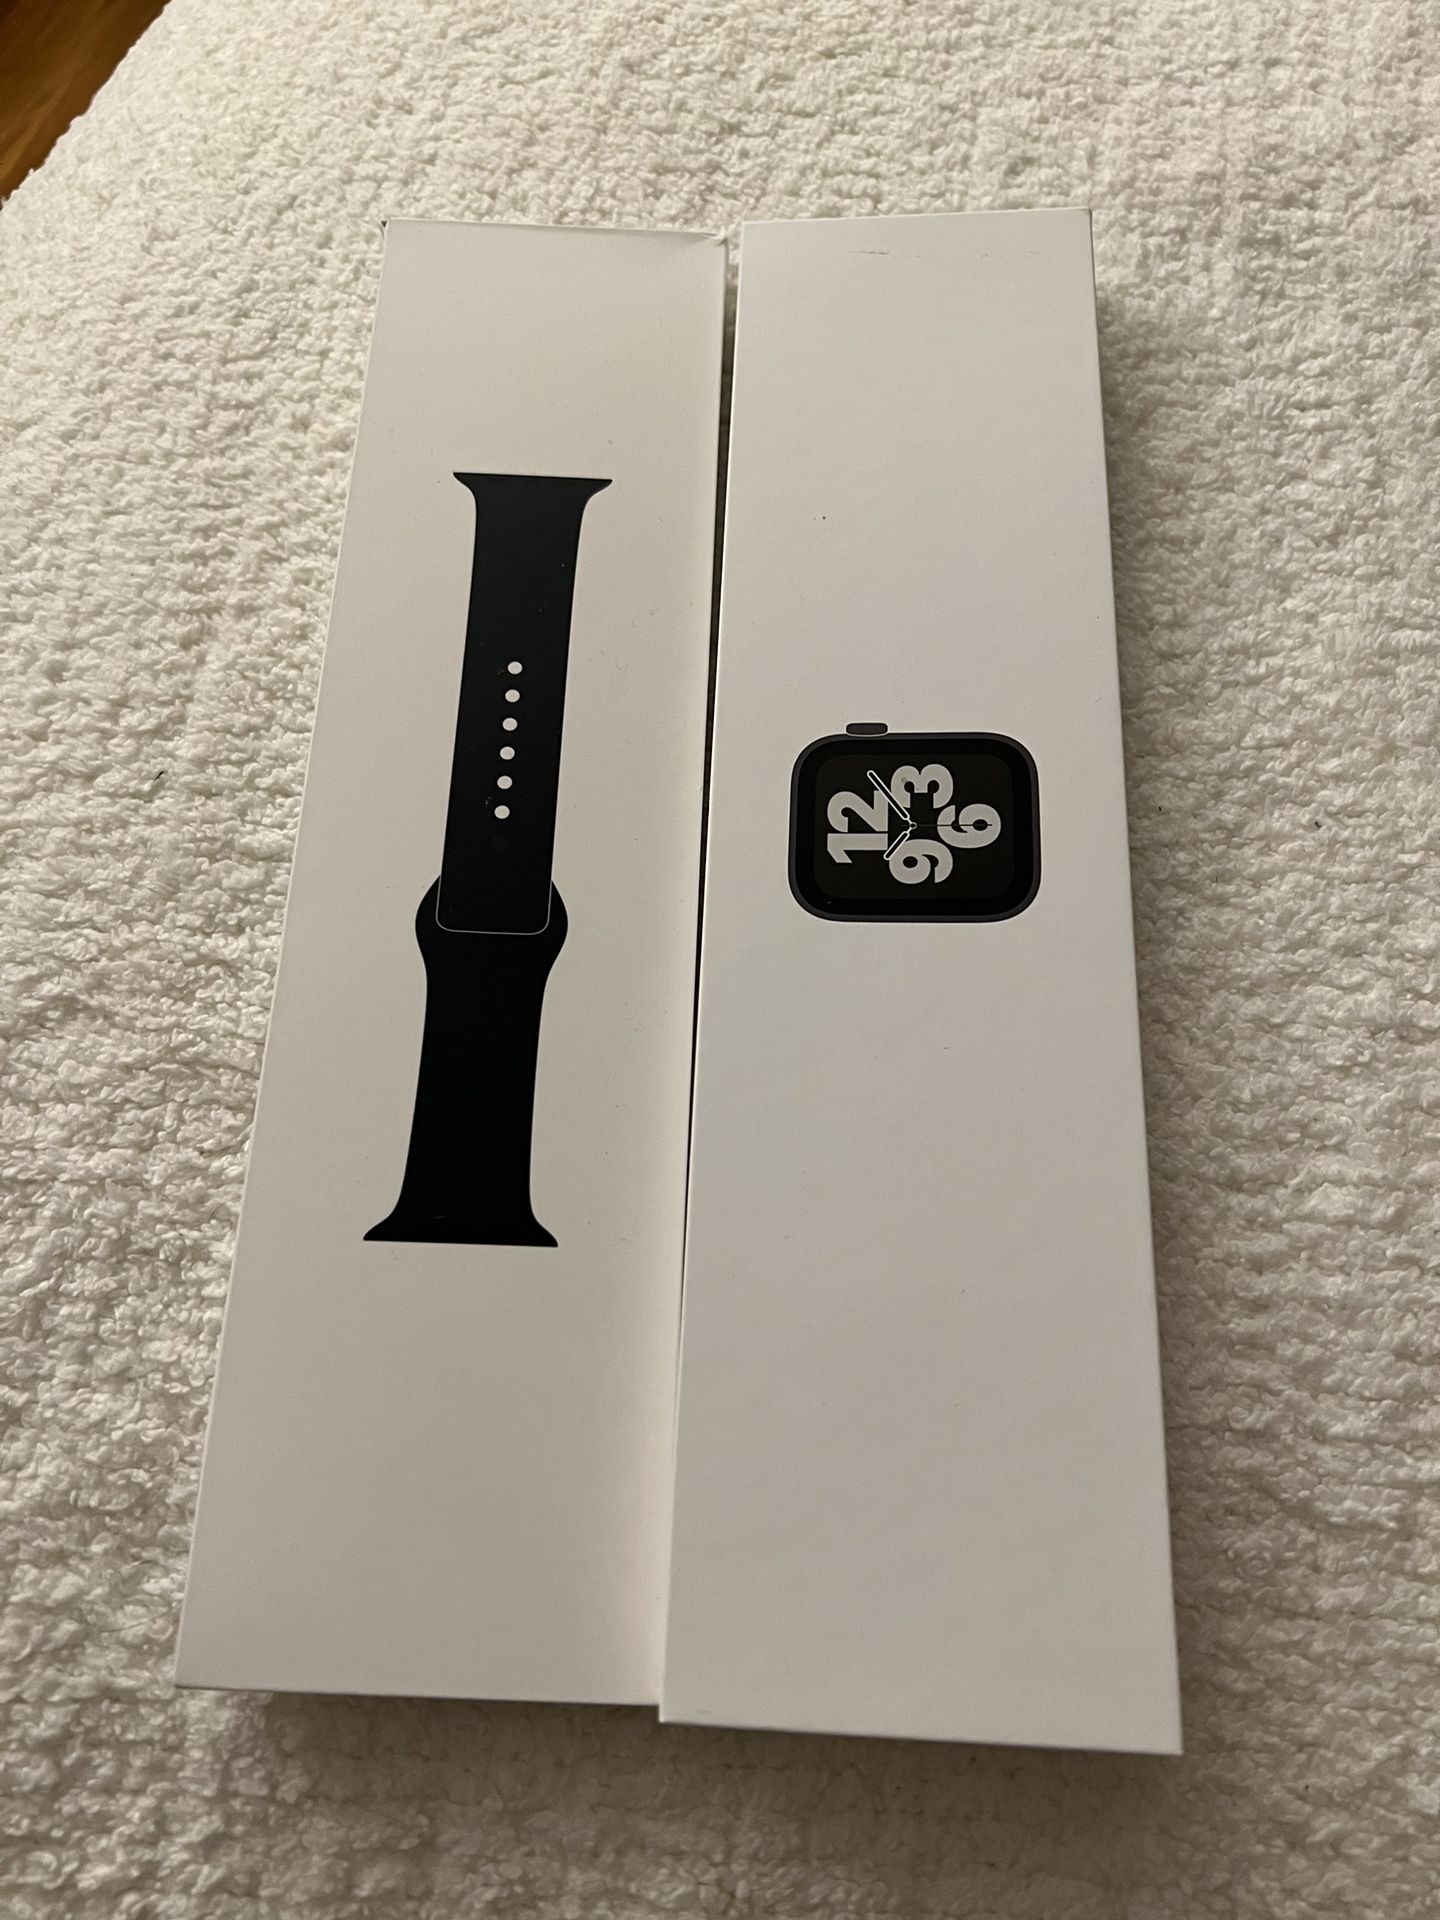 Apple Watch SE